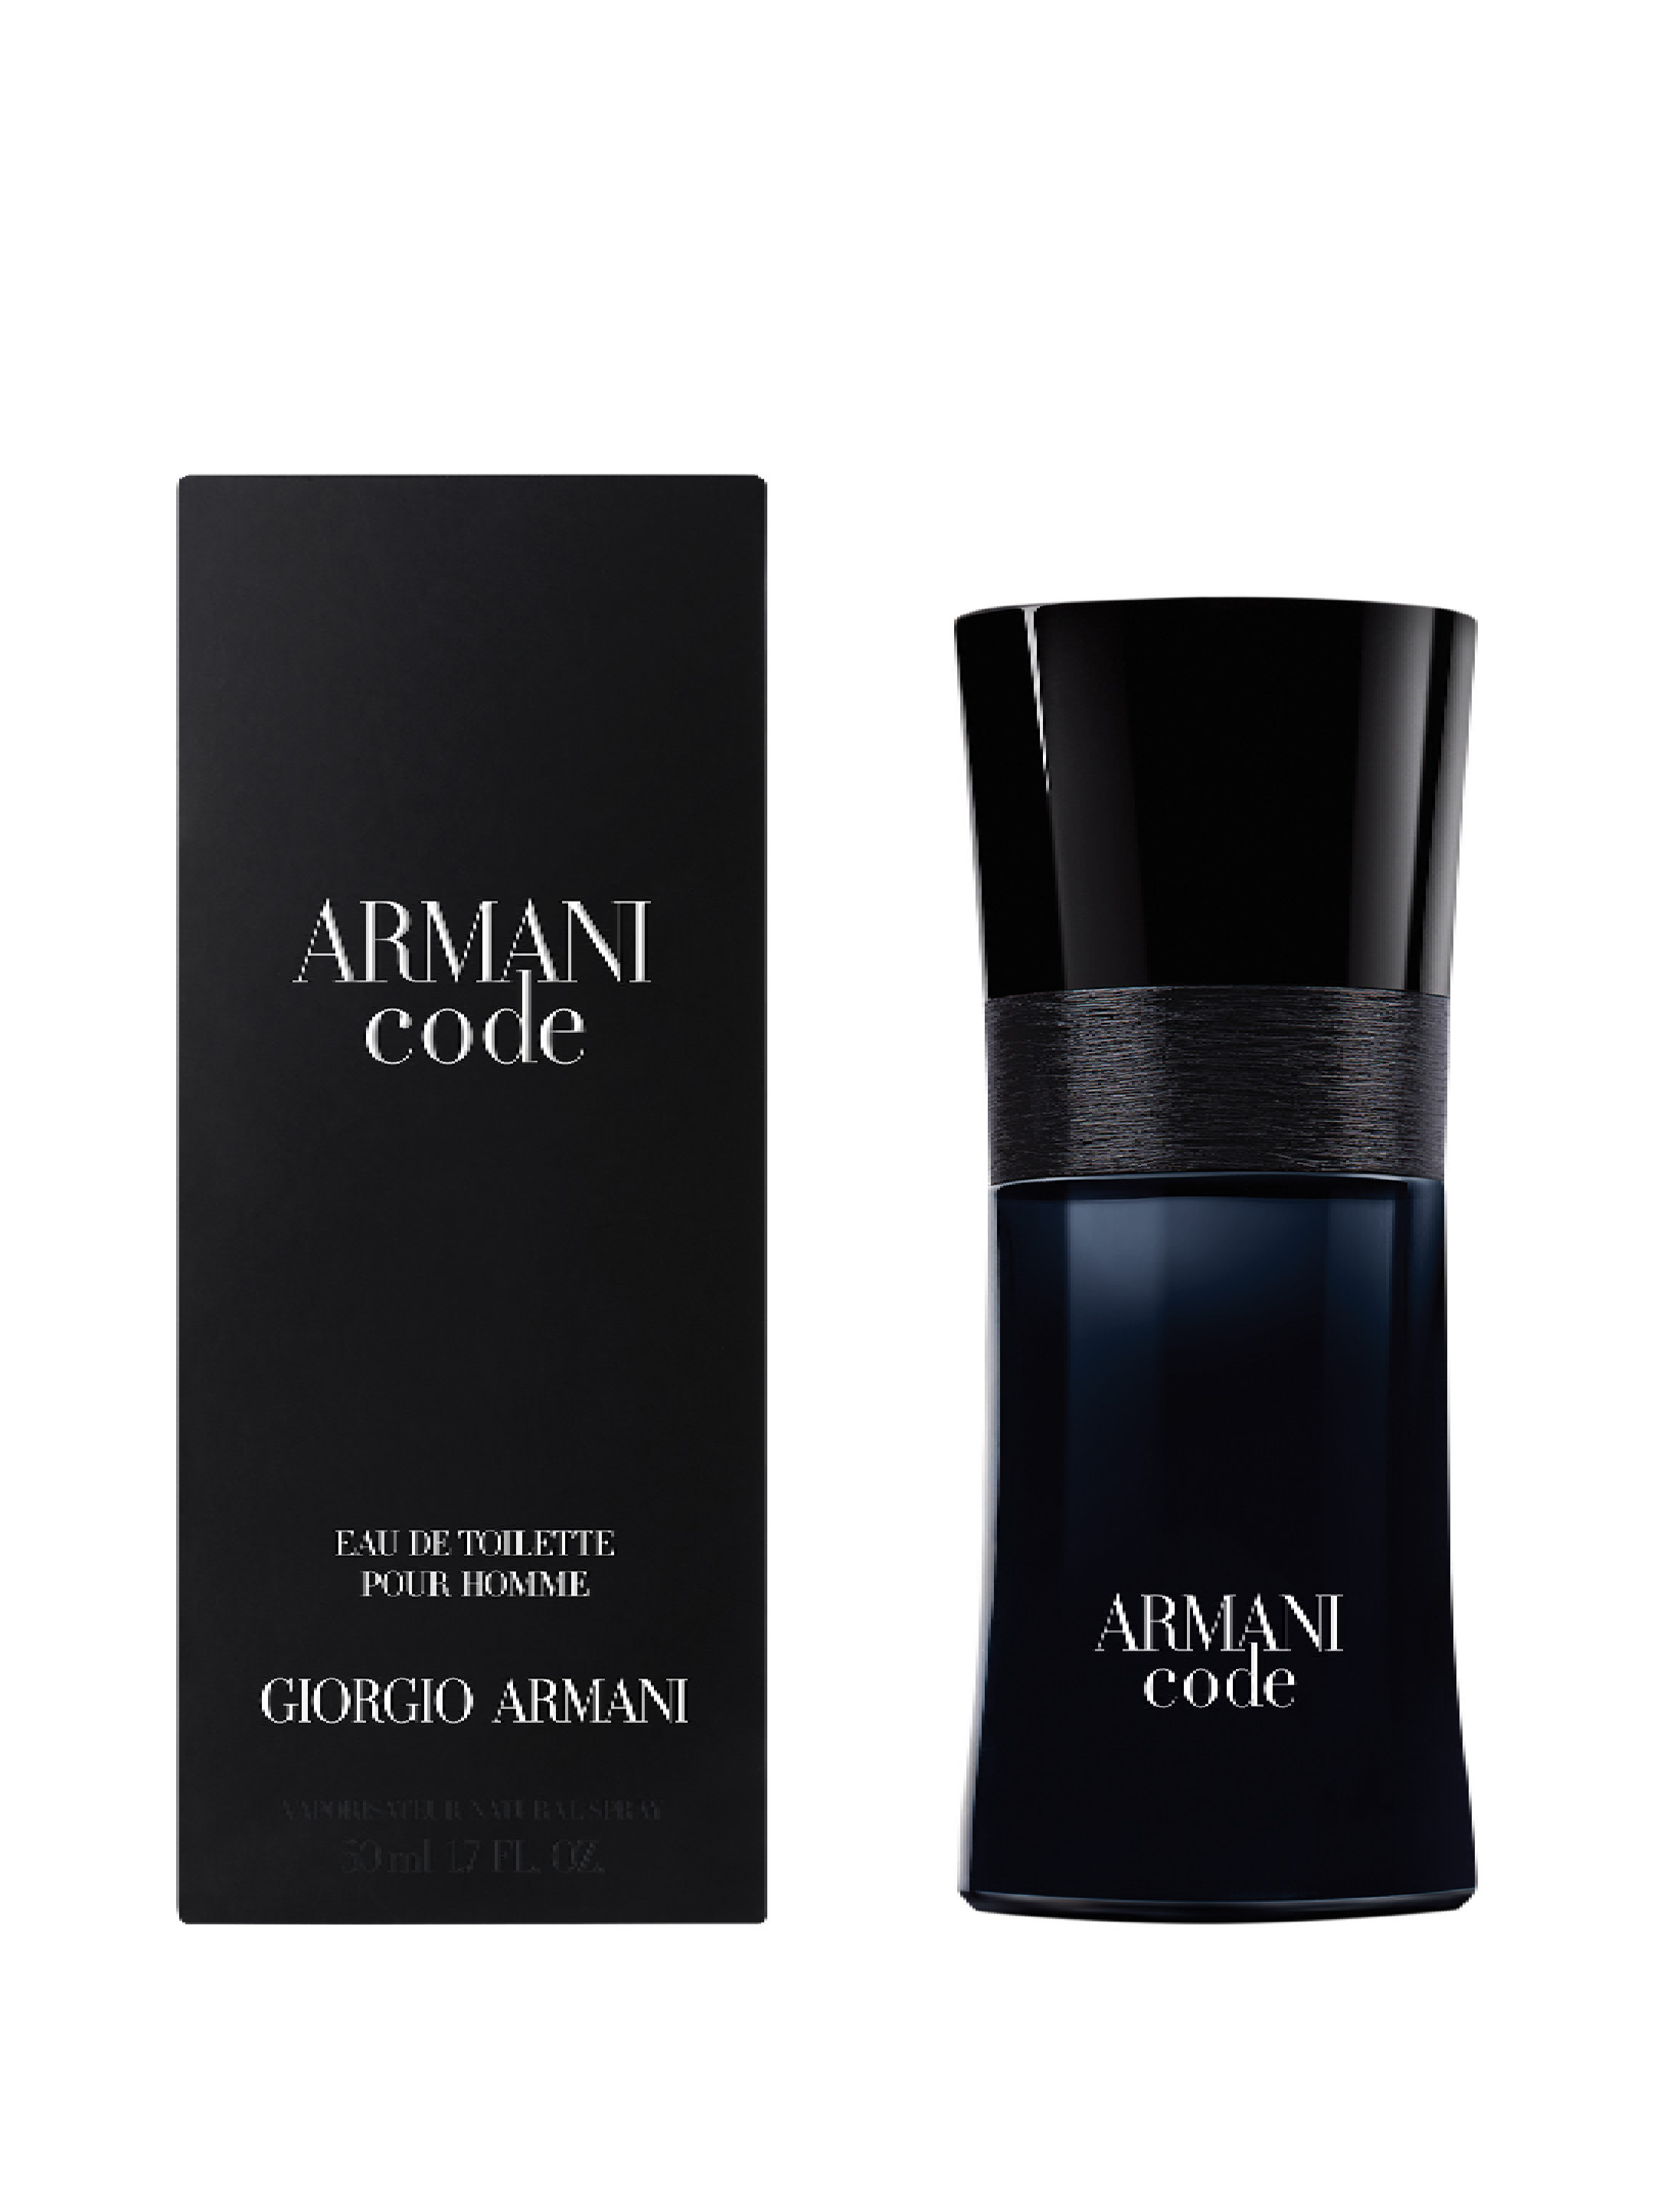 Армани мужские ароматы. Armani code мужской 100 ml. Giorgio Armani туалетная вода Armani code homme. Armani Black code. Армани код мужские 50 мл.